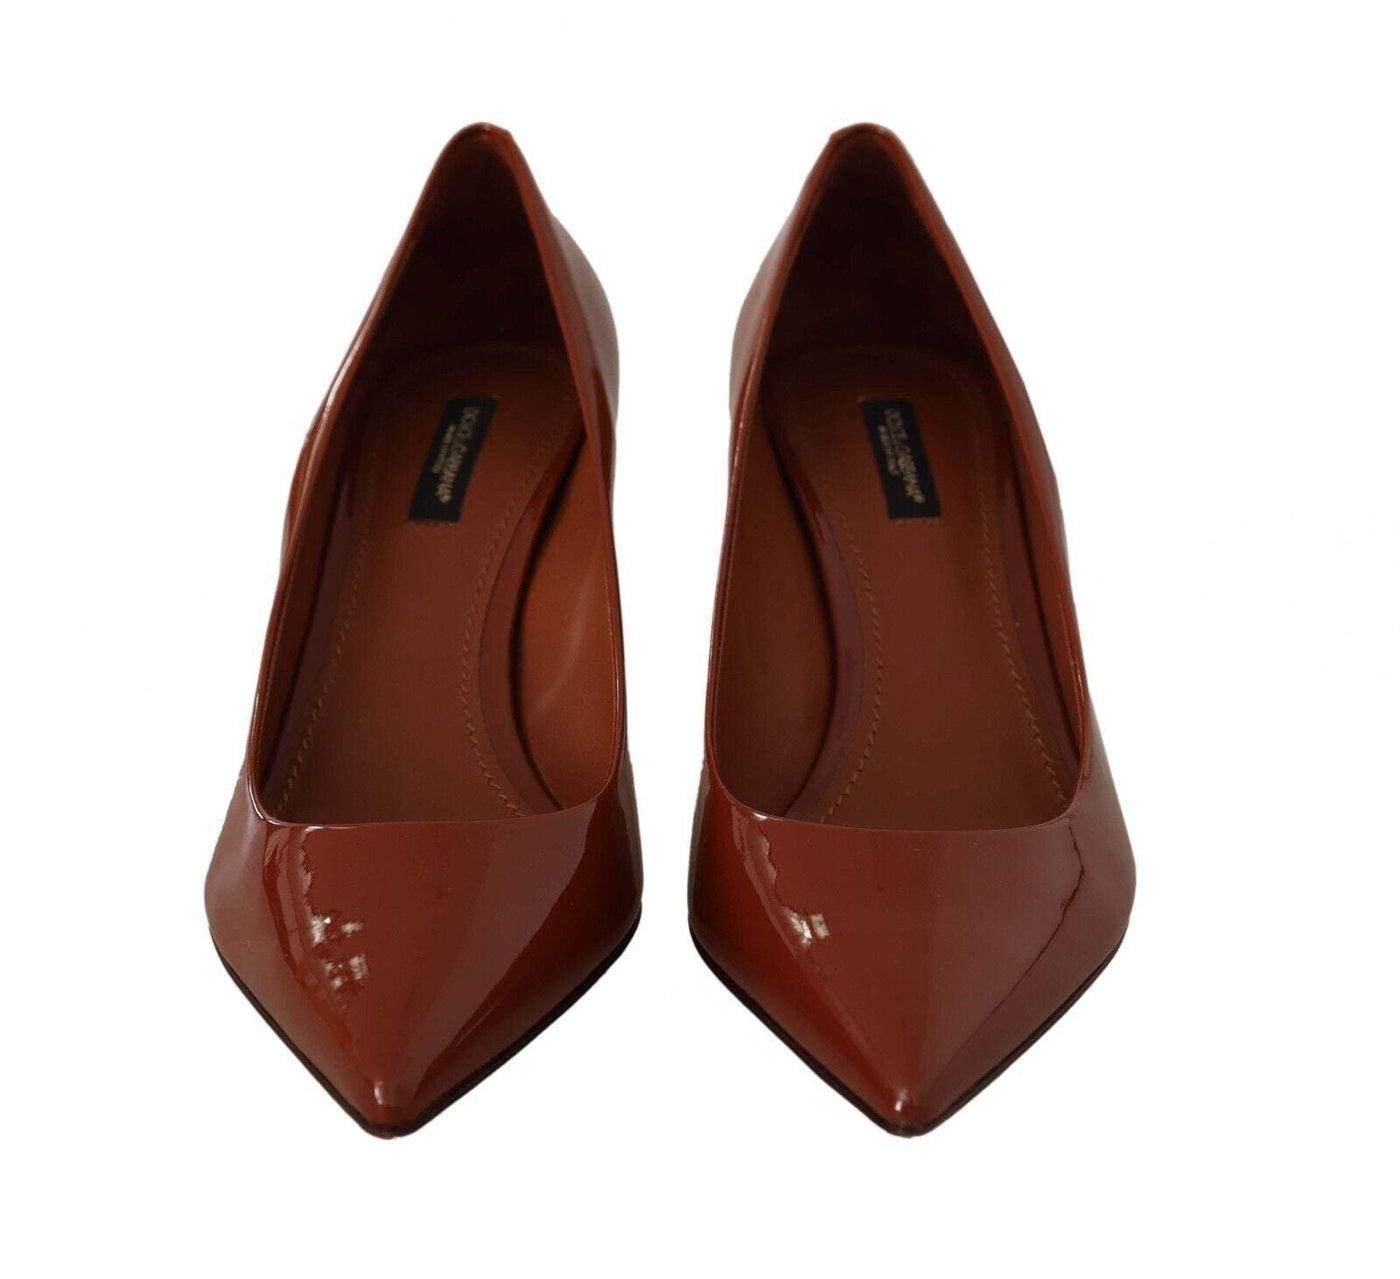 Dolce & Gabbana Brown Kitten Heels Pumps Patent Leather Brown, Dolce & Gabbana, EU39/US8.5, feed-1, Pumps - Women - Shoes at SEYMAYKA